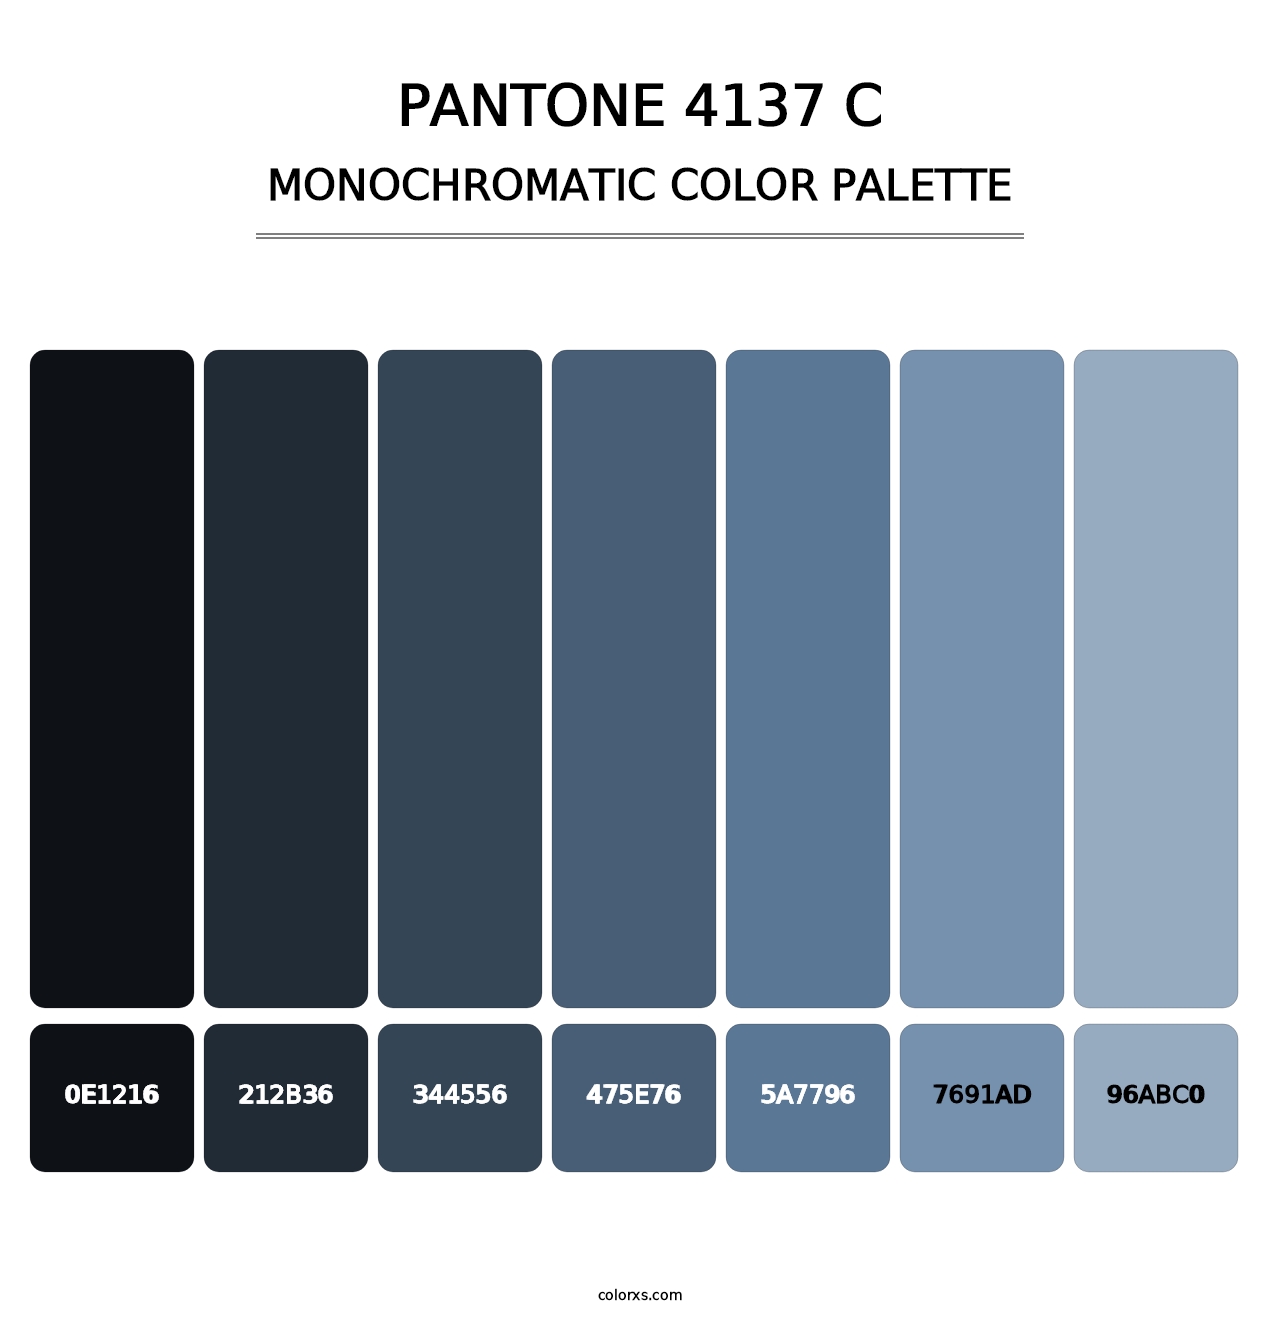 PANTONE 4137 C - Monochromatic Color Palette